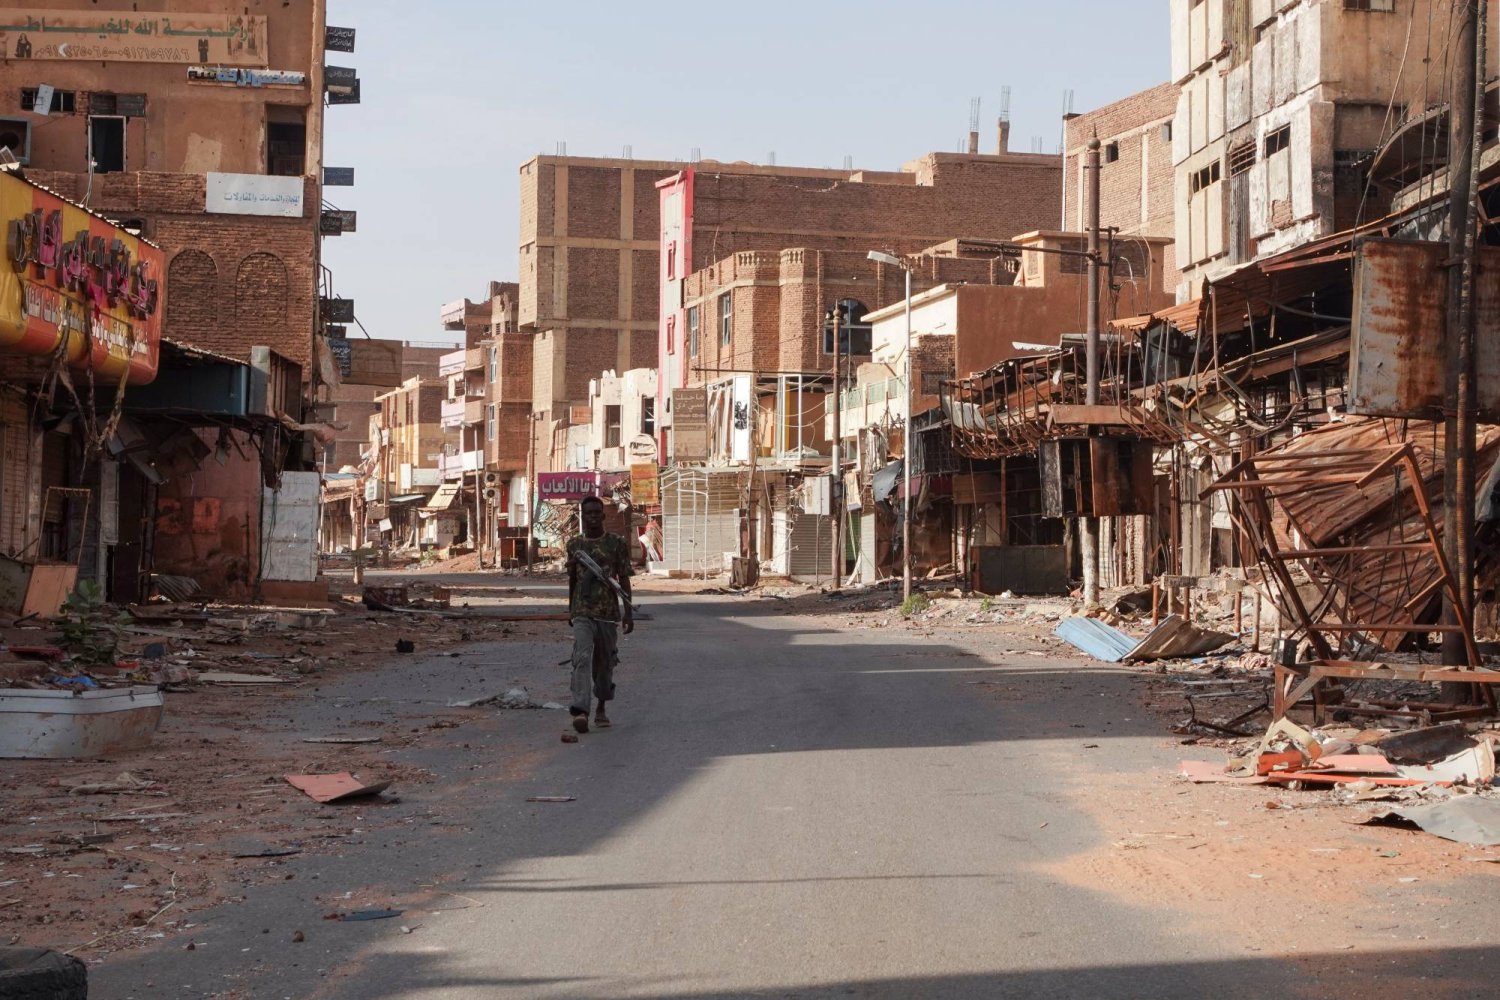 جندي سوداني يمر بين منازل متضررة جراء الحرب مطلع الشهر في مدينة أم درمان بالخرطوم (رويترز)